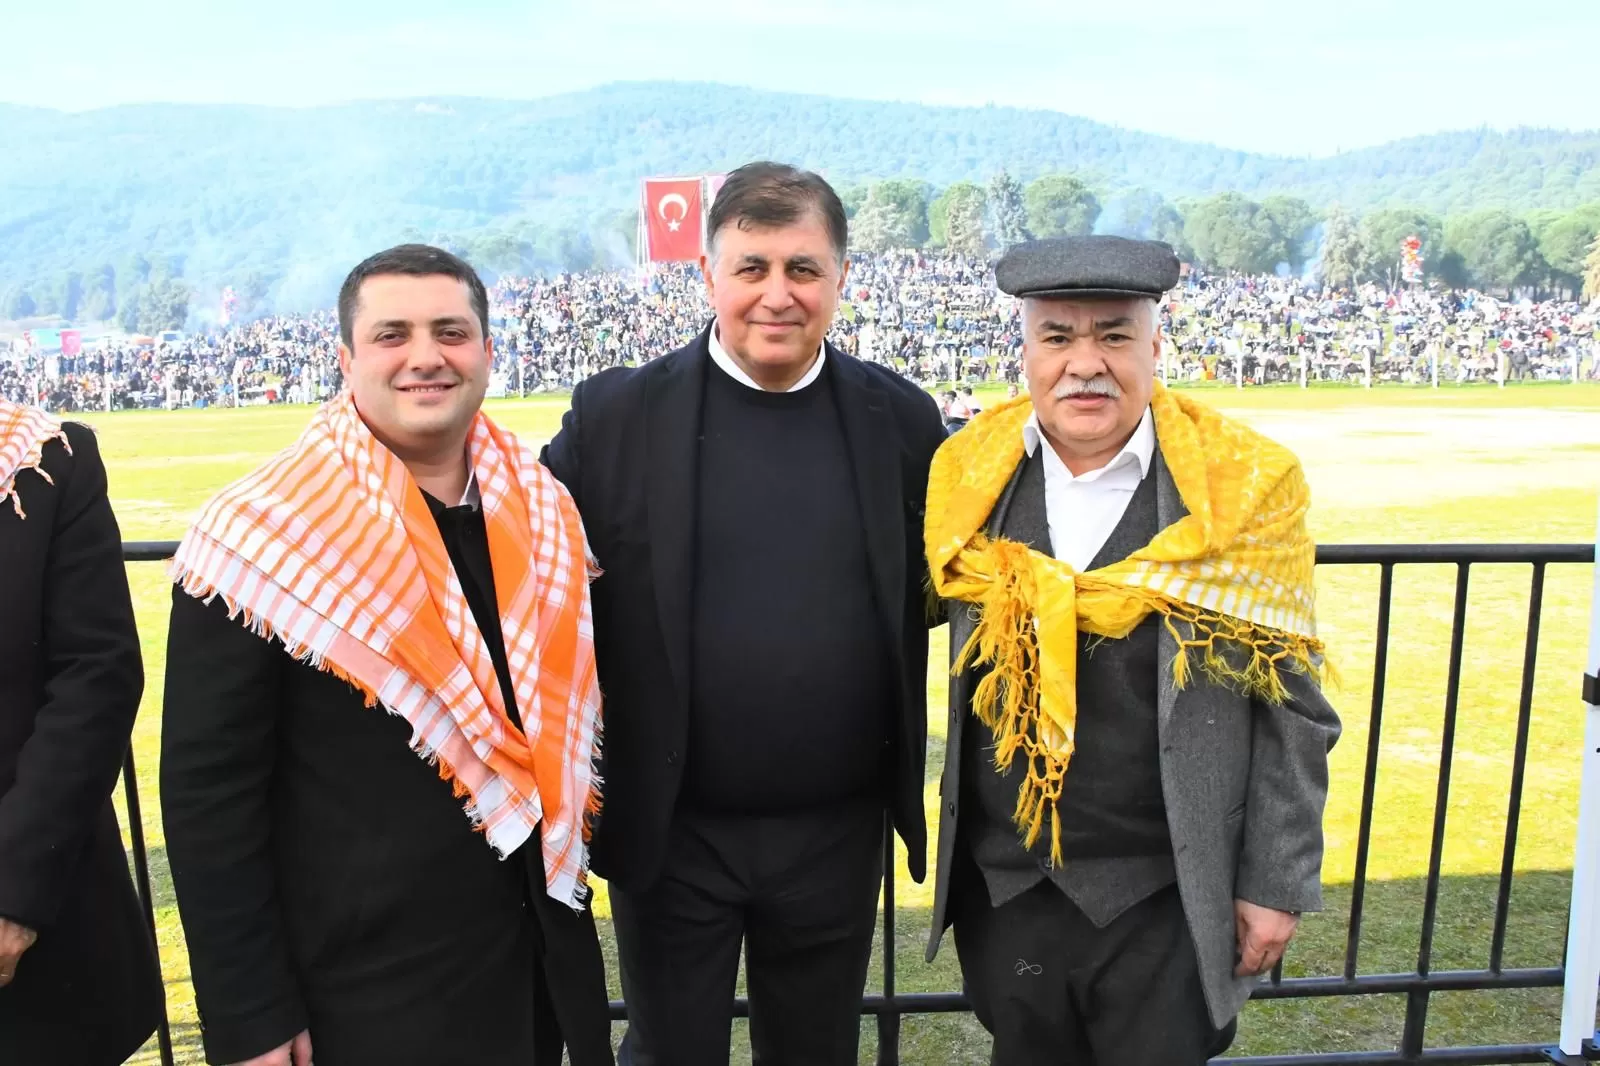 Bölgenin en büyüğü olarak ünlenen Torbalı Deve Güreşleri Festivali 15. kez gerçekleşti. Aydın, Manisa, Balıkesir, Muğla, Antalya ve Çanakkale'den gelen 160 deve, kıran kırana güreşti